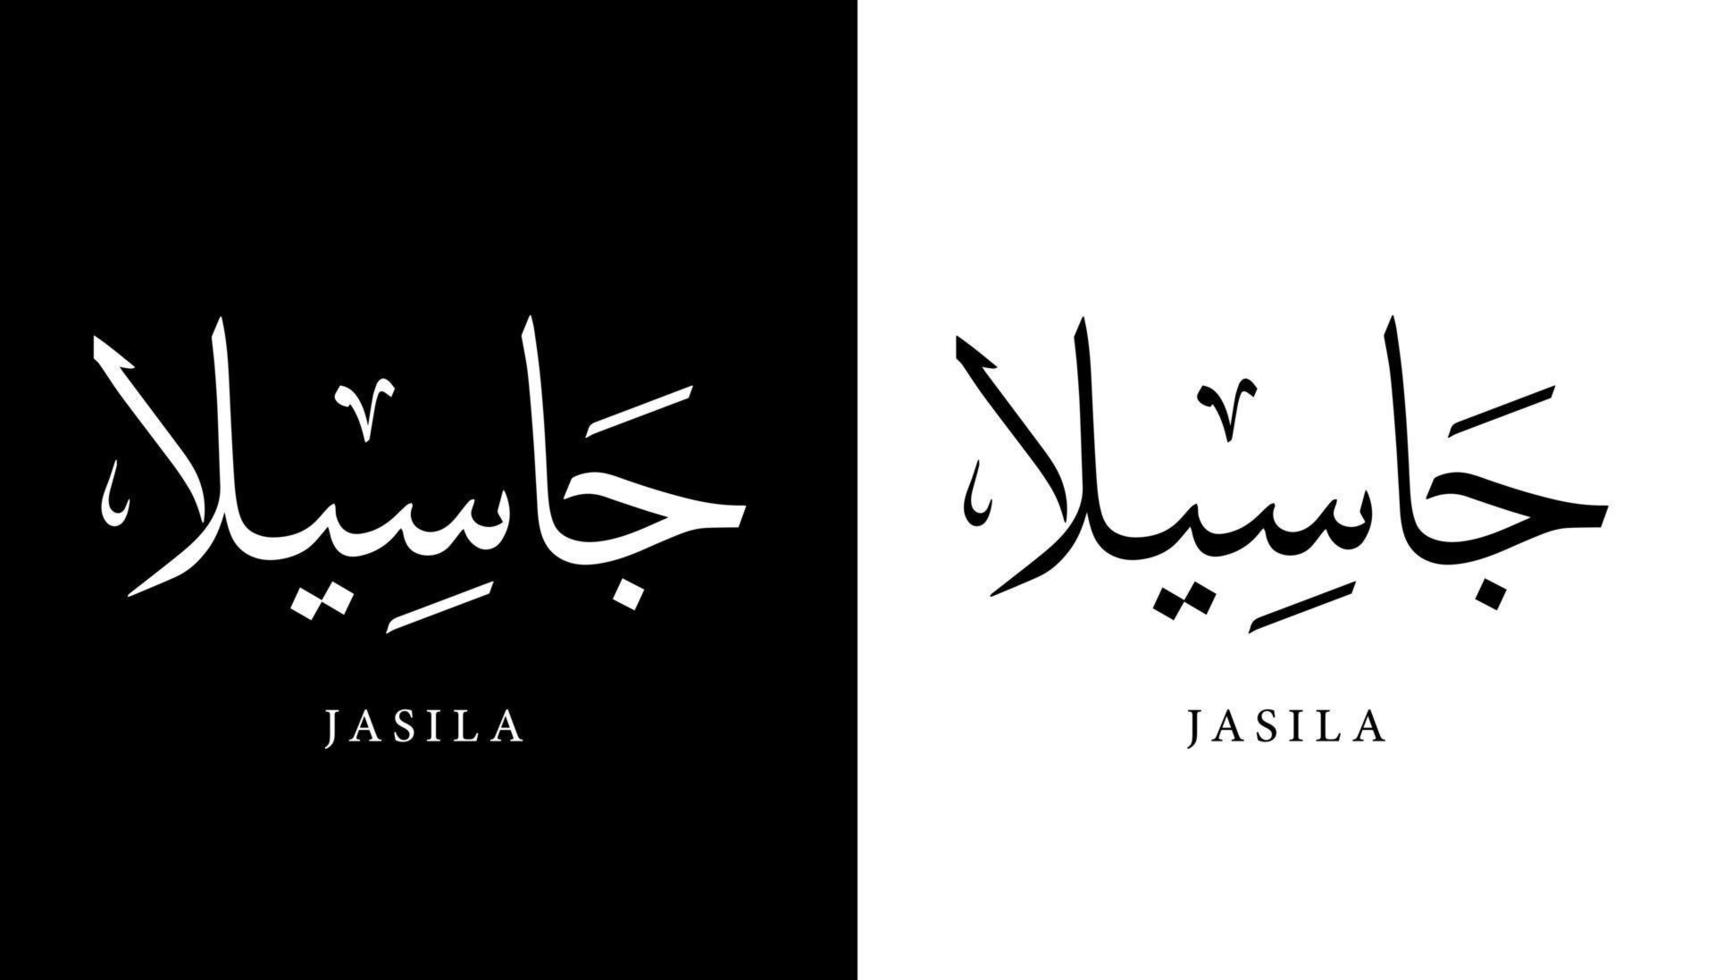 nome della calligrafia araba tradotto 'jasila' lettere arabe alfabeto font lettering logo islamico illustrazione vettoriale